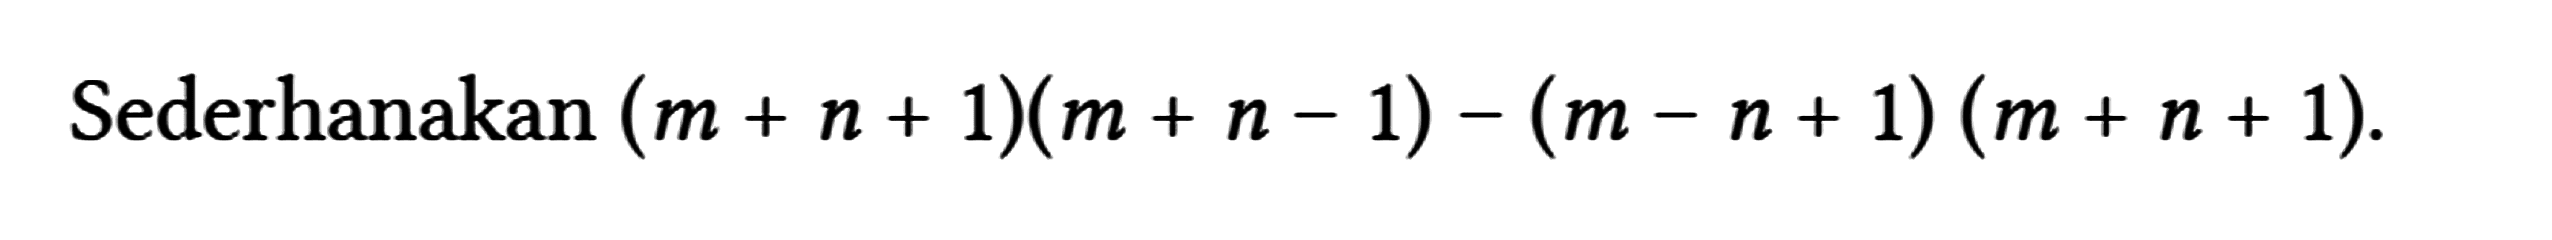 Sederhanakan (m+n+1)(m+n-1)-(m-n+1)(m+n+1)